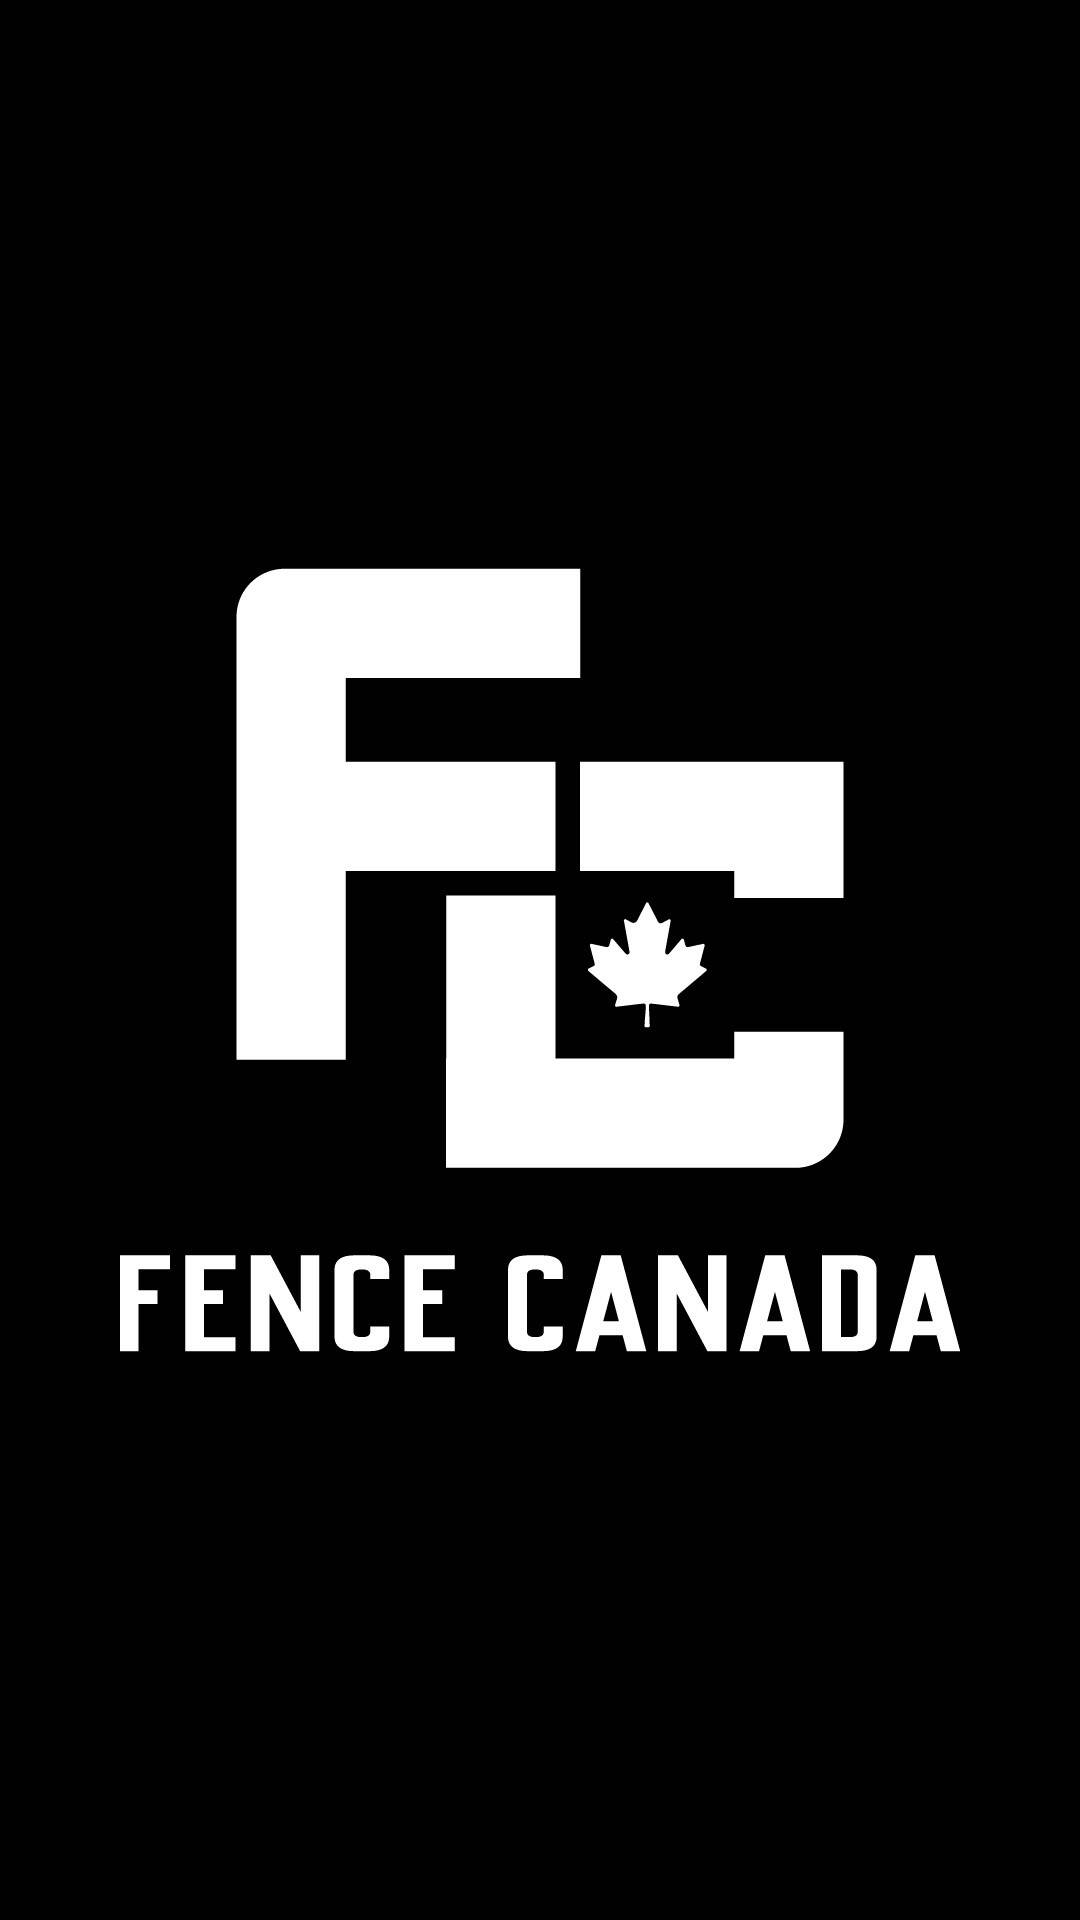 Fence Canada